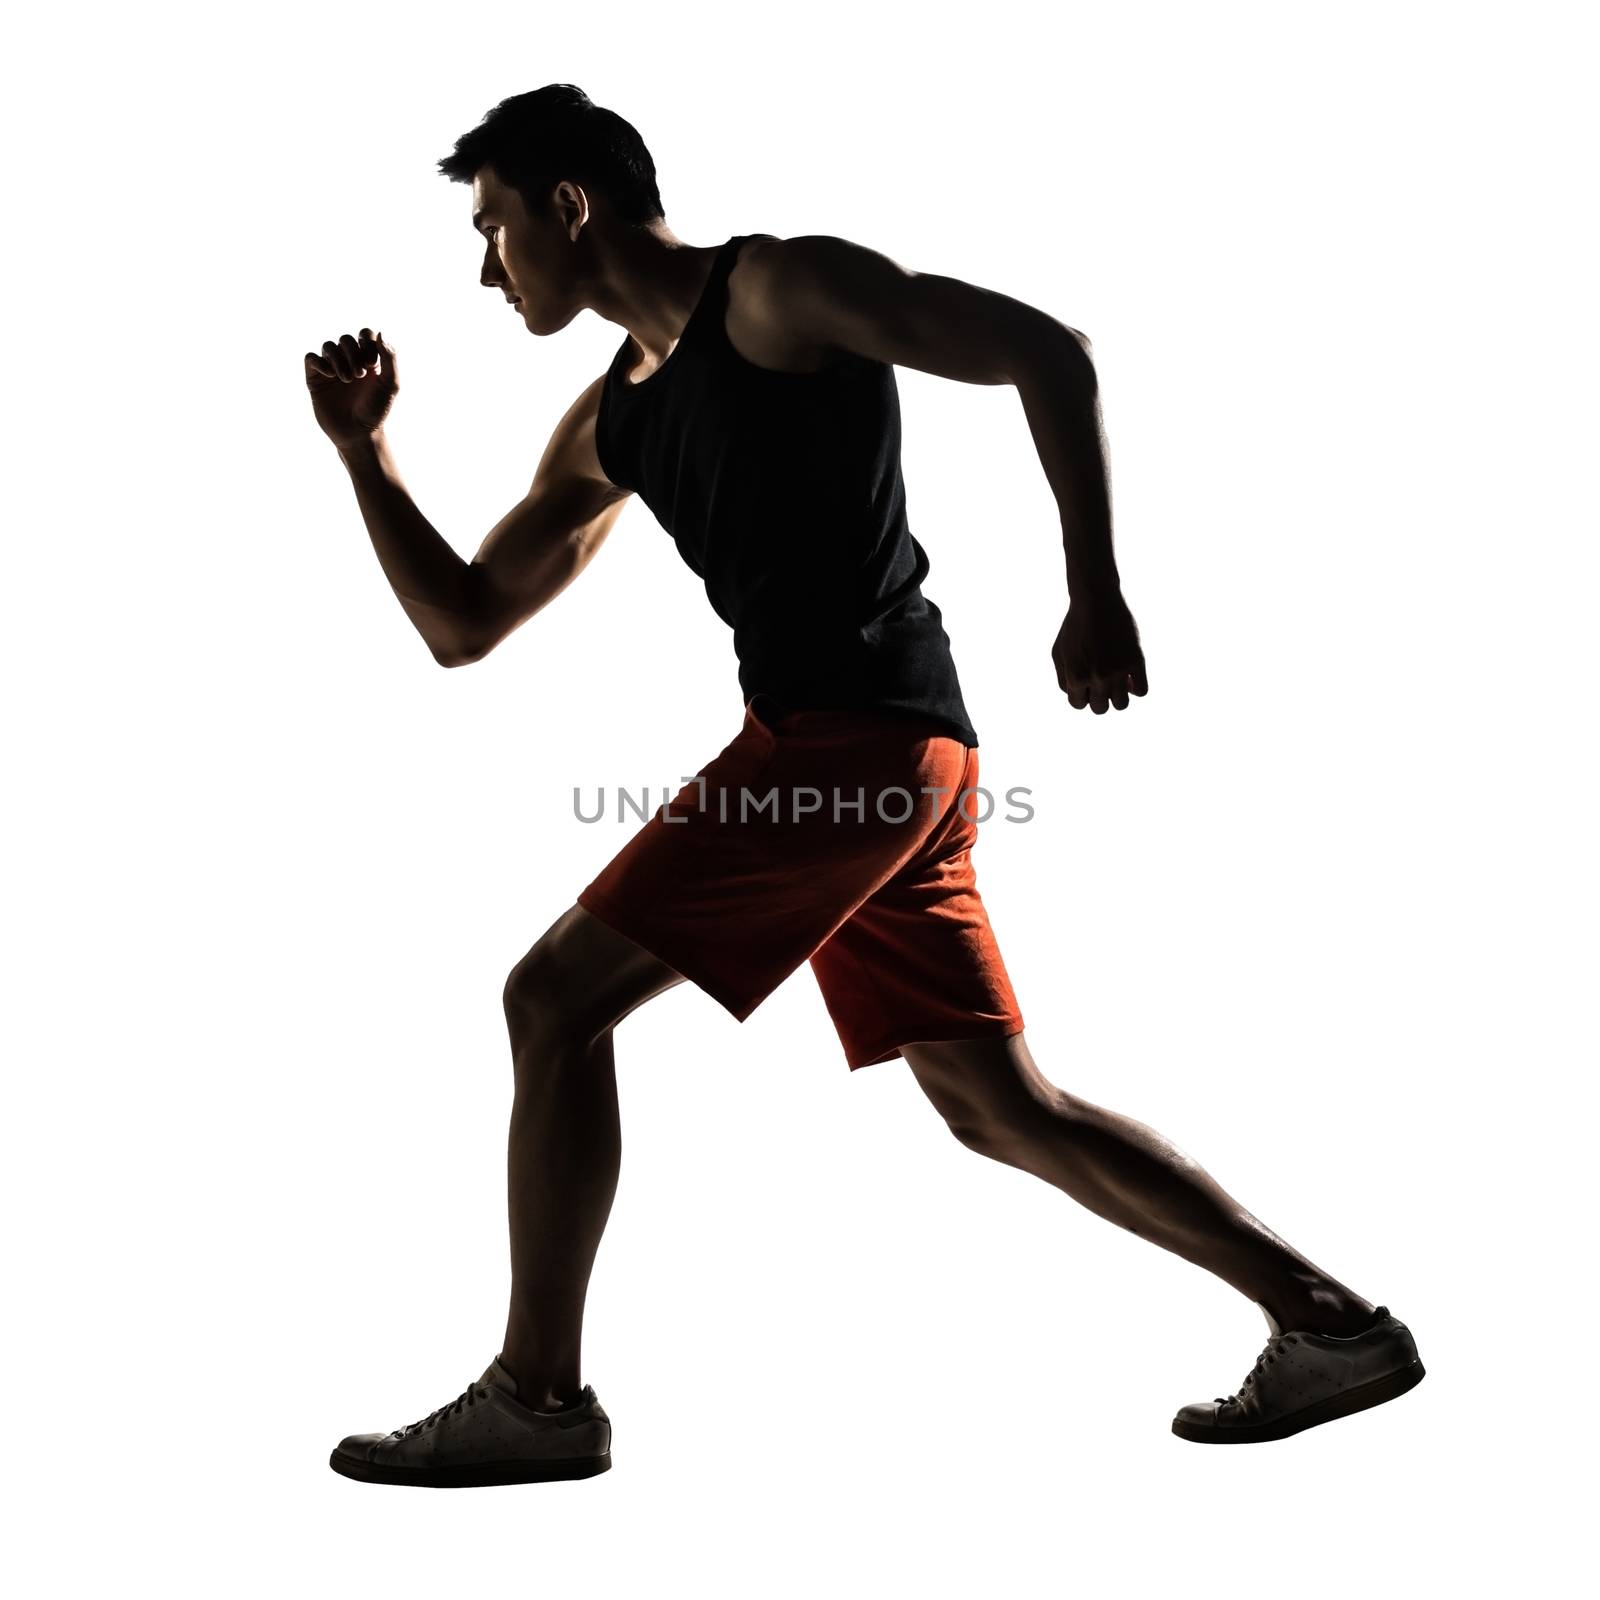 Asian athlete running by elwynn